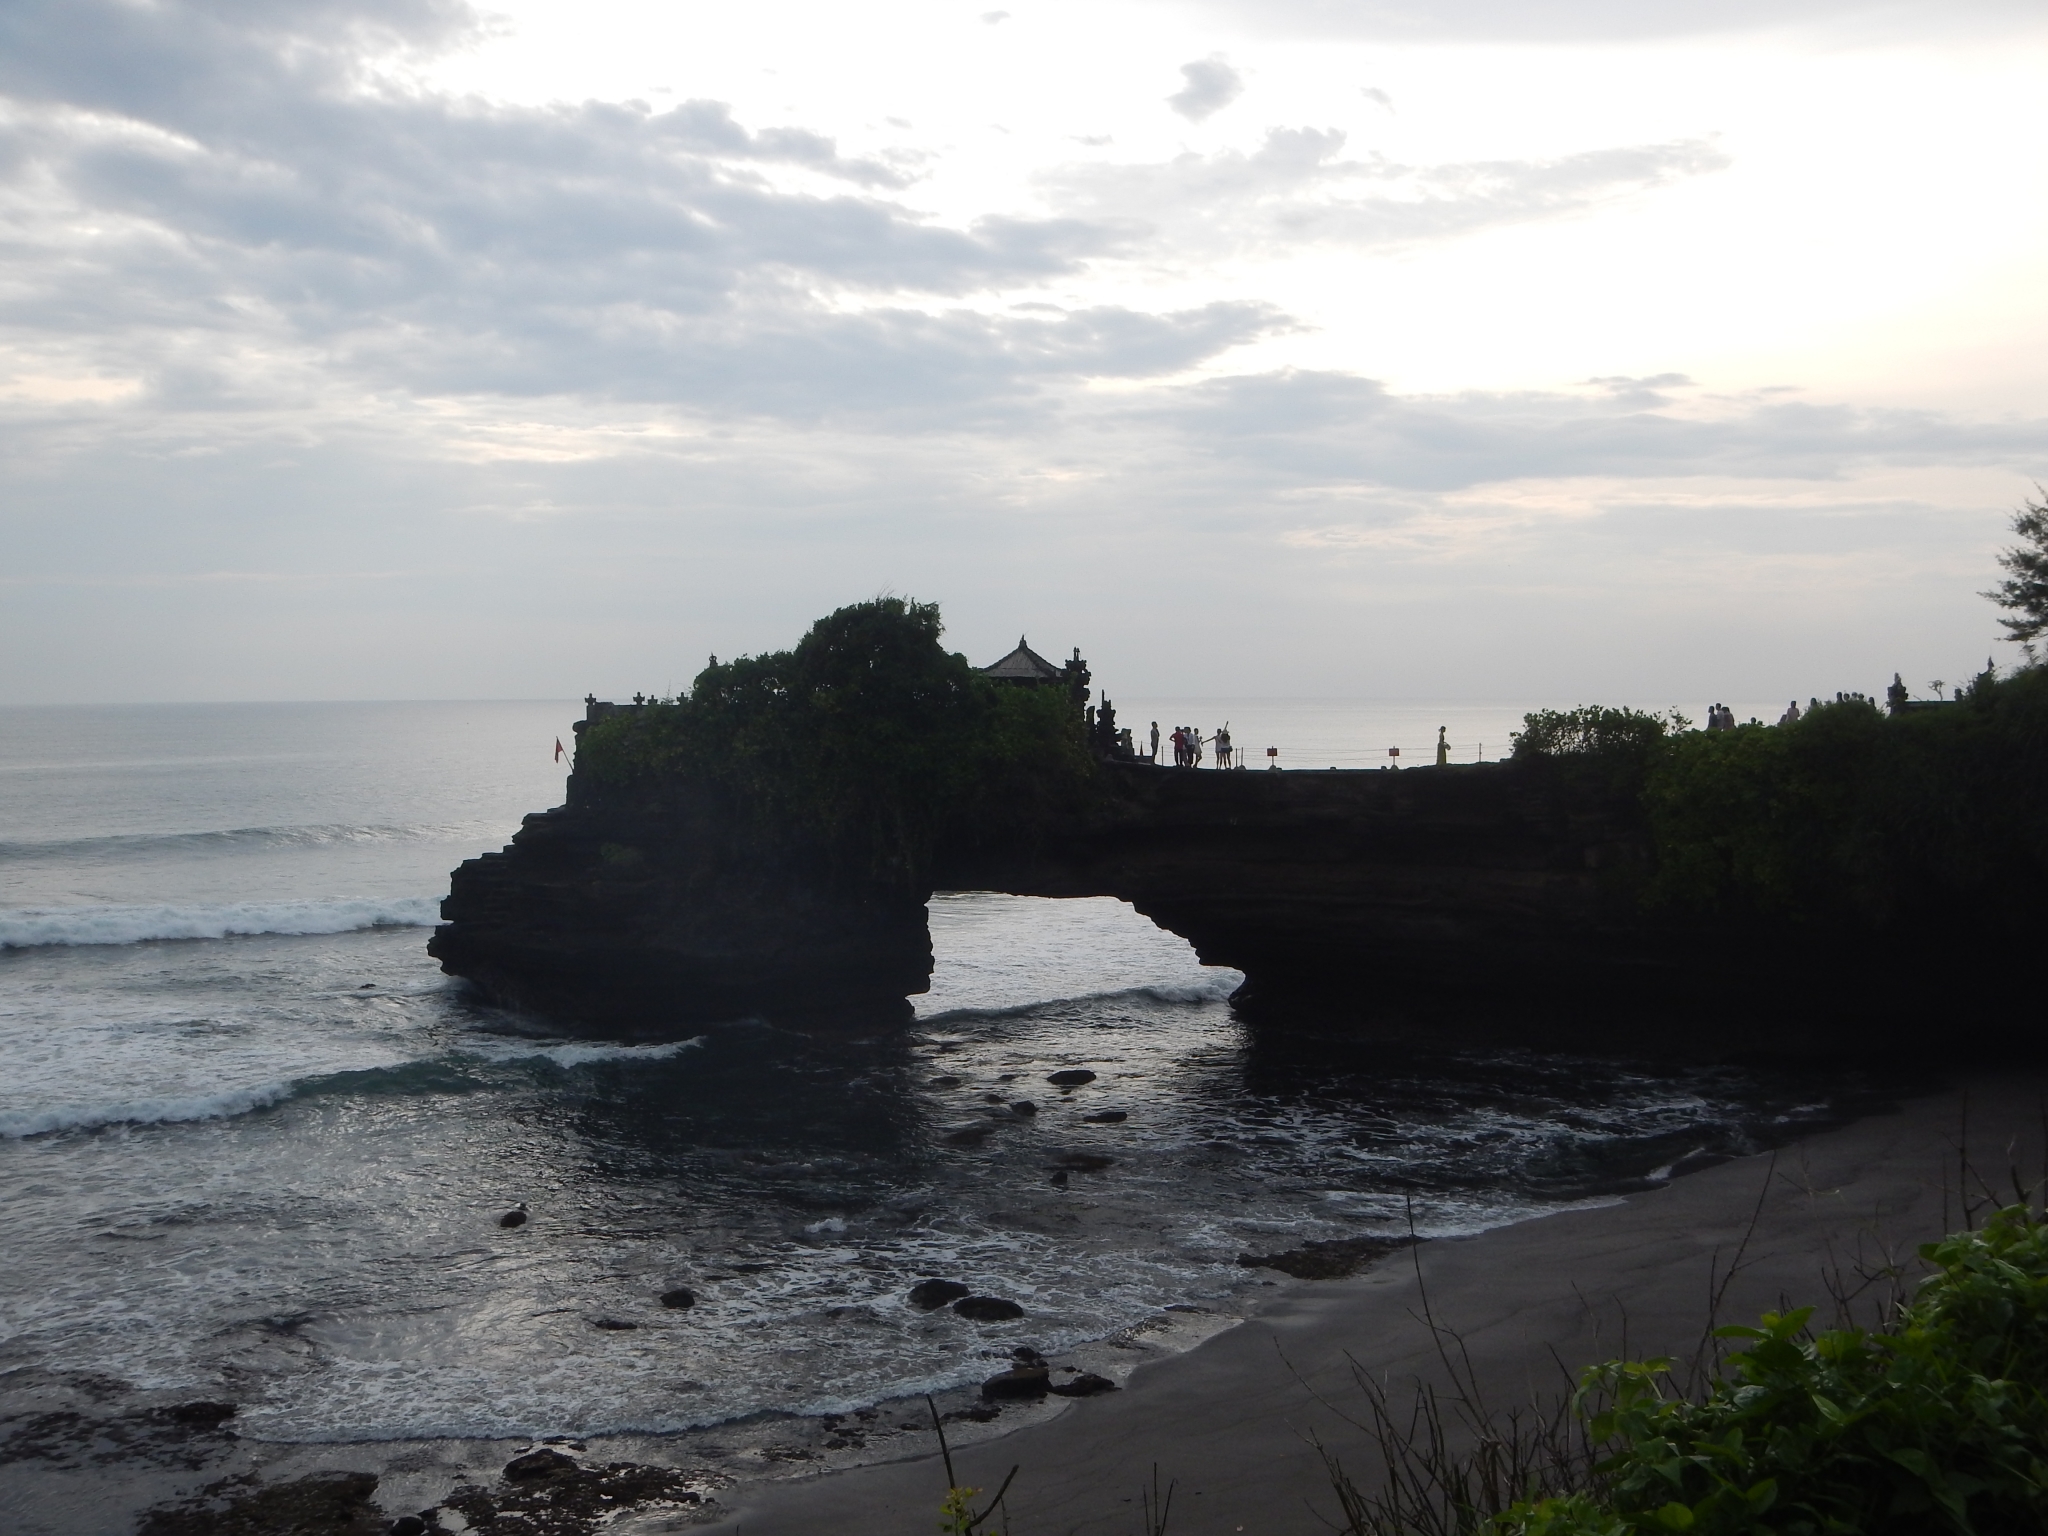 Bali; Indrukken, verbazing en verwondering